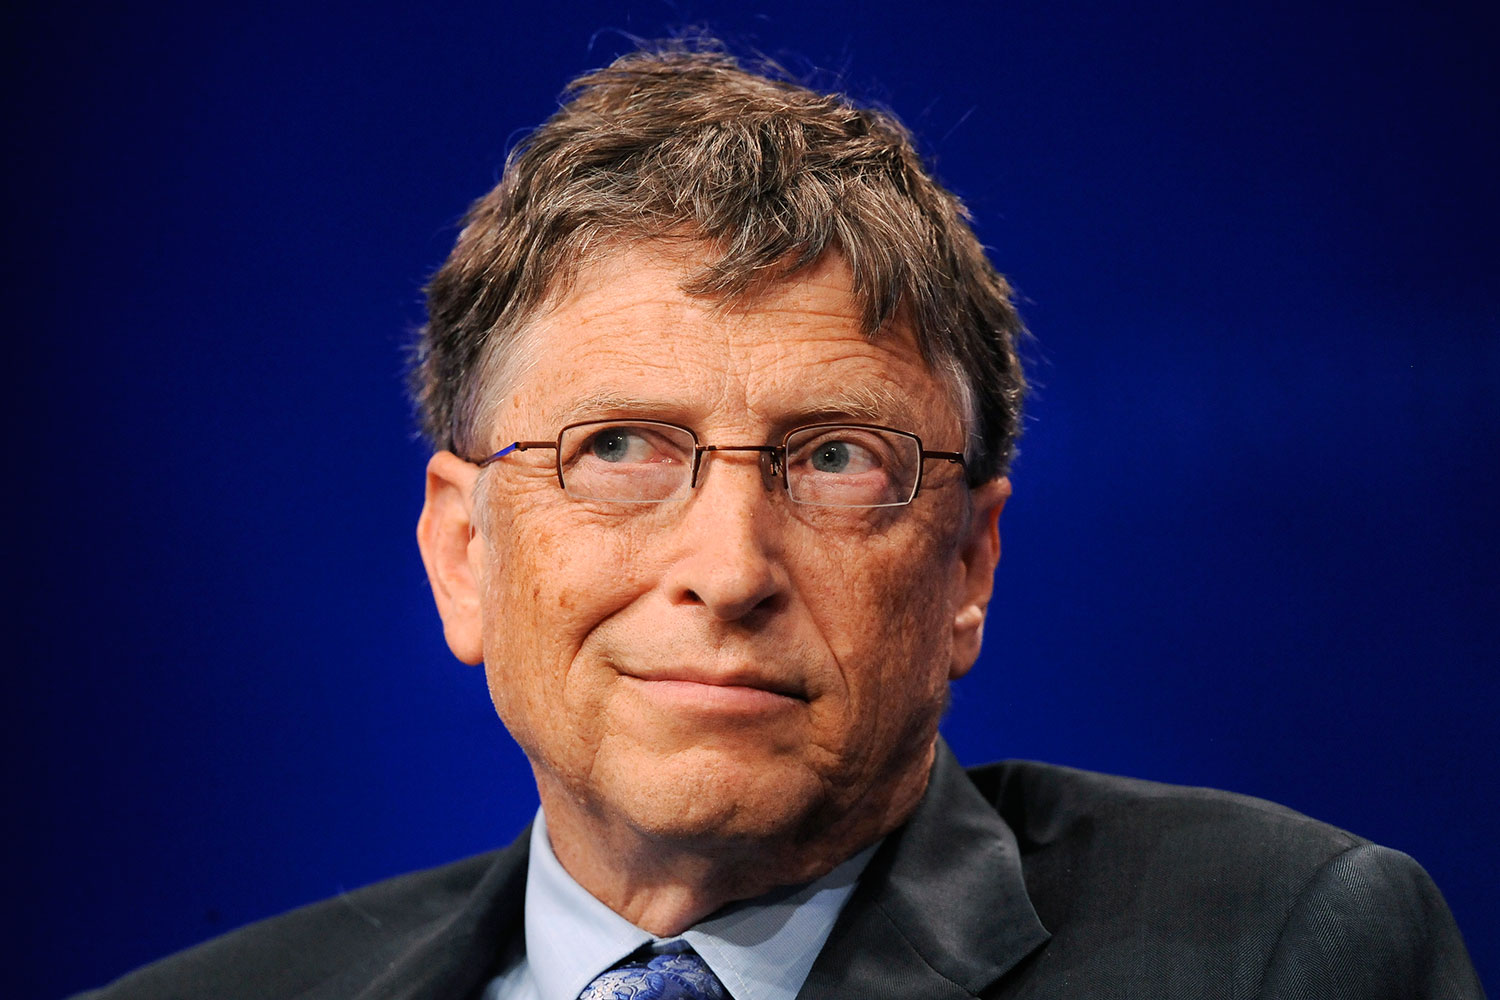 El fundador de Microsoft, Bill Gates, vuelve a ser el hombre más rico del mundo